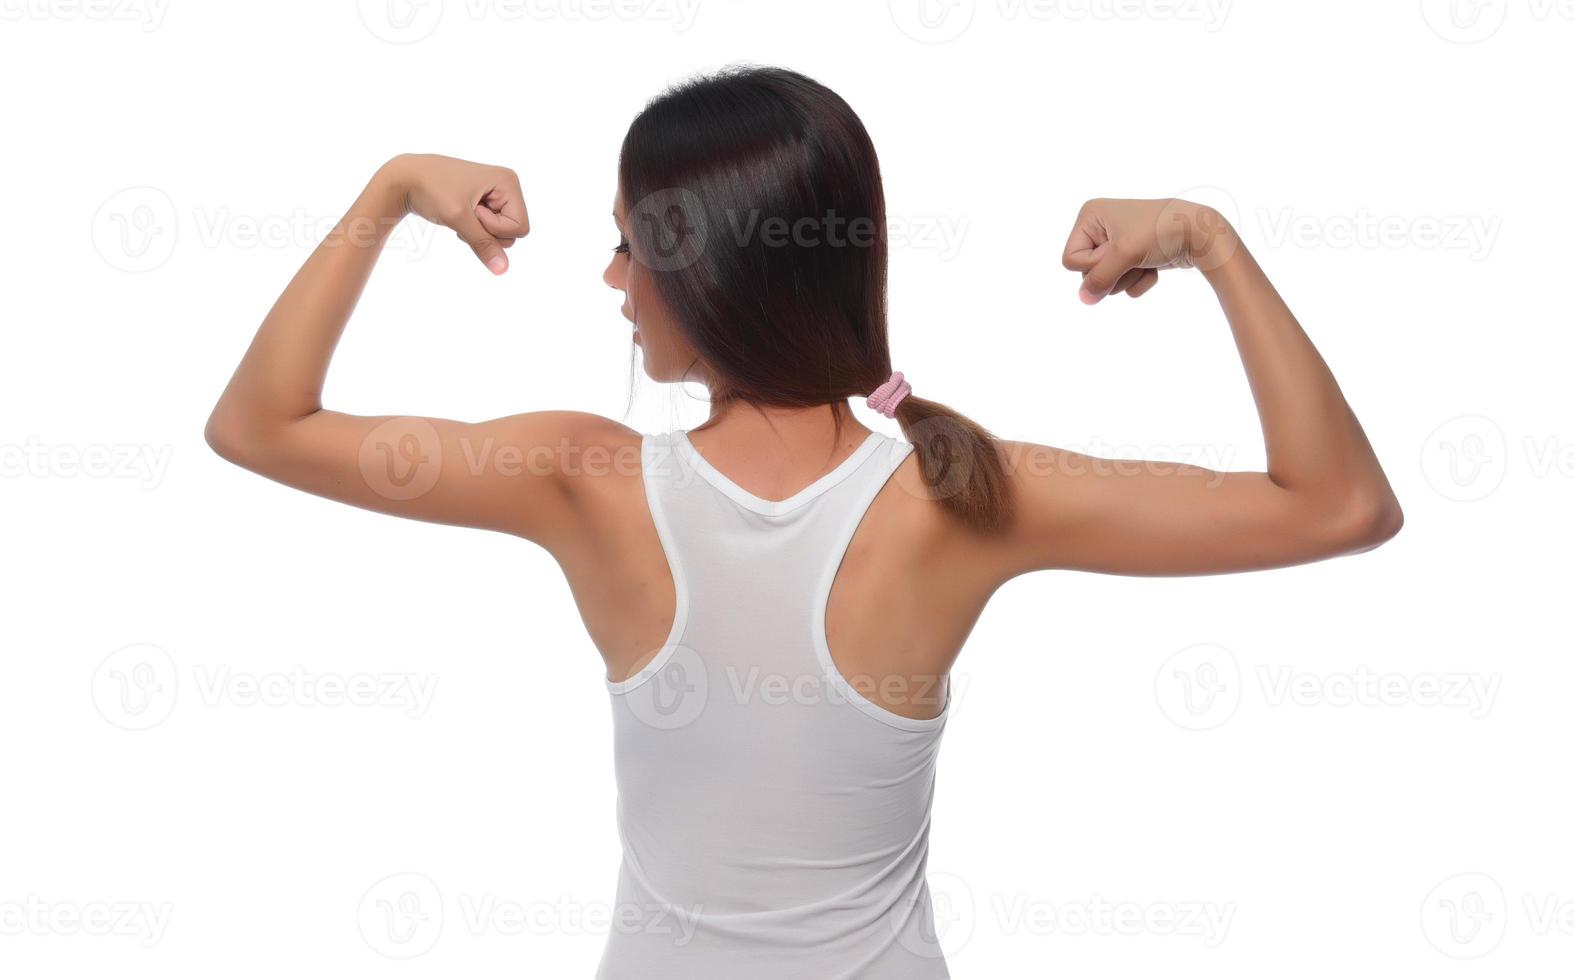 rong kondition idrottare, kvinna kroppsbyggare, böjning muskler, som visar passa kropp foto